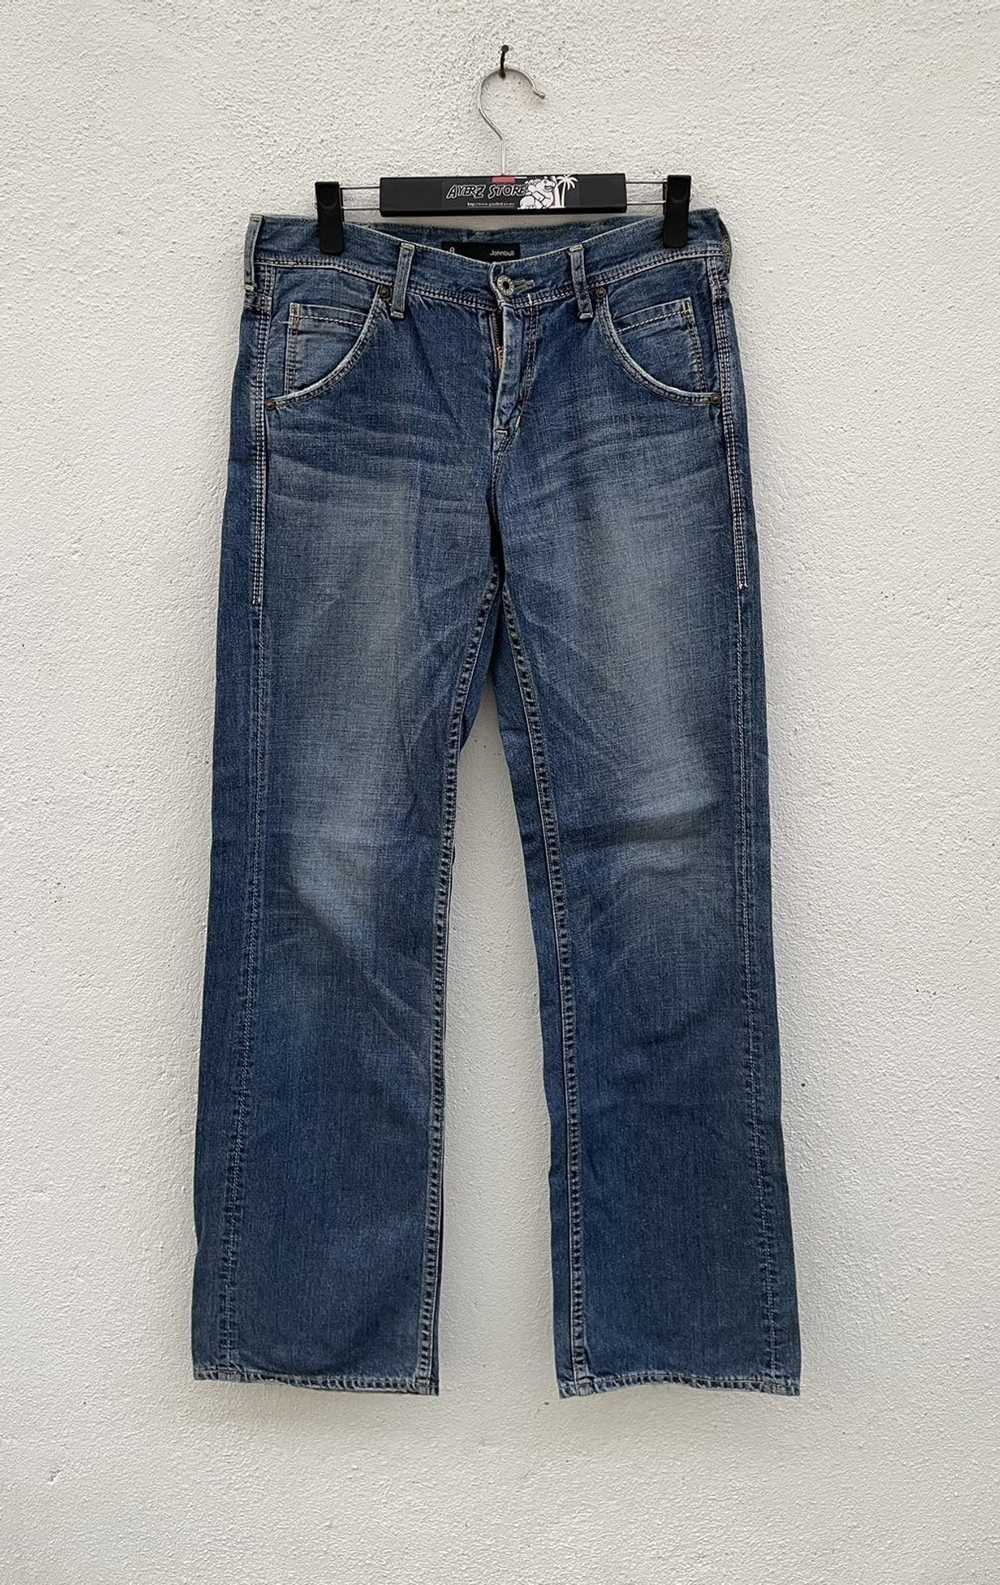 Japanese Brand × John Bull John Bull Jeans - image 2